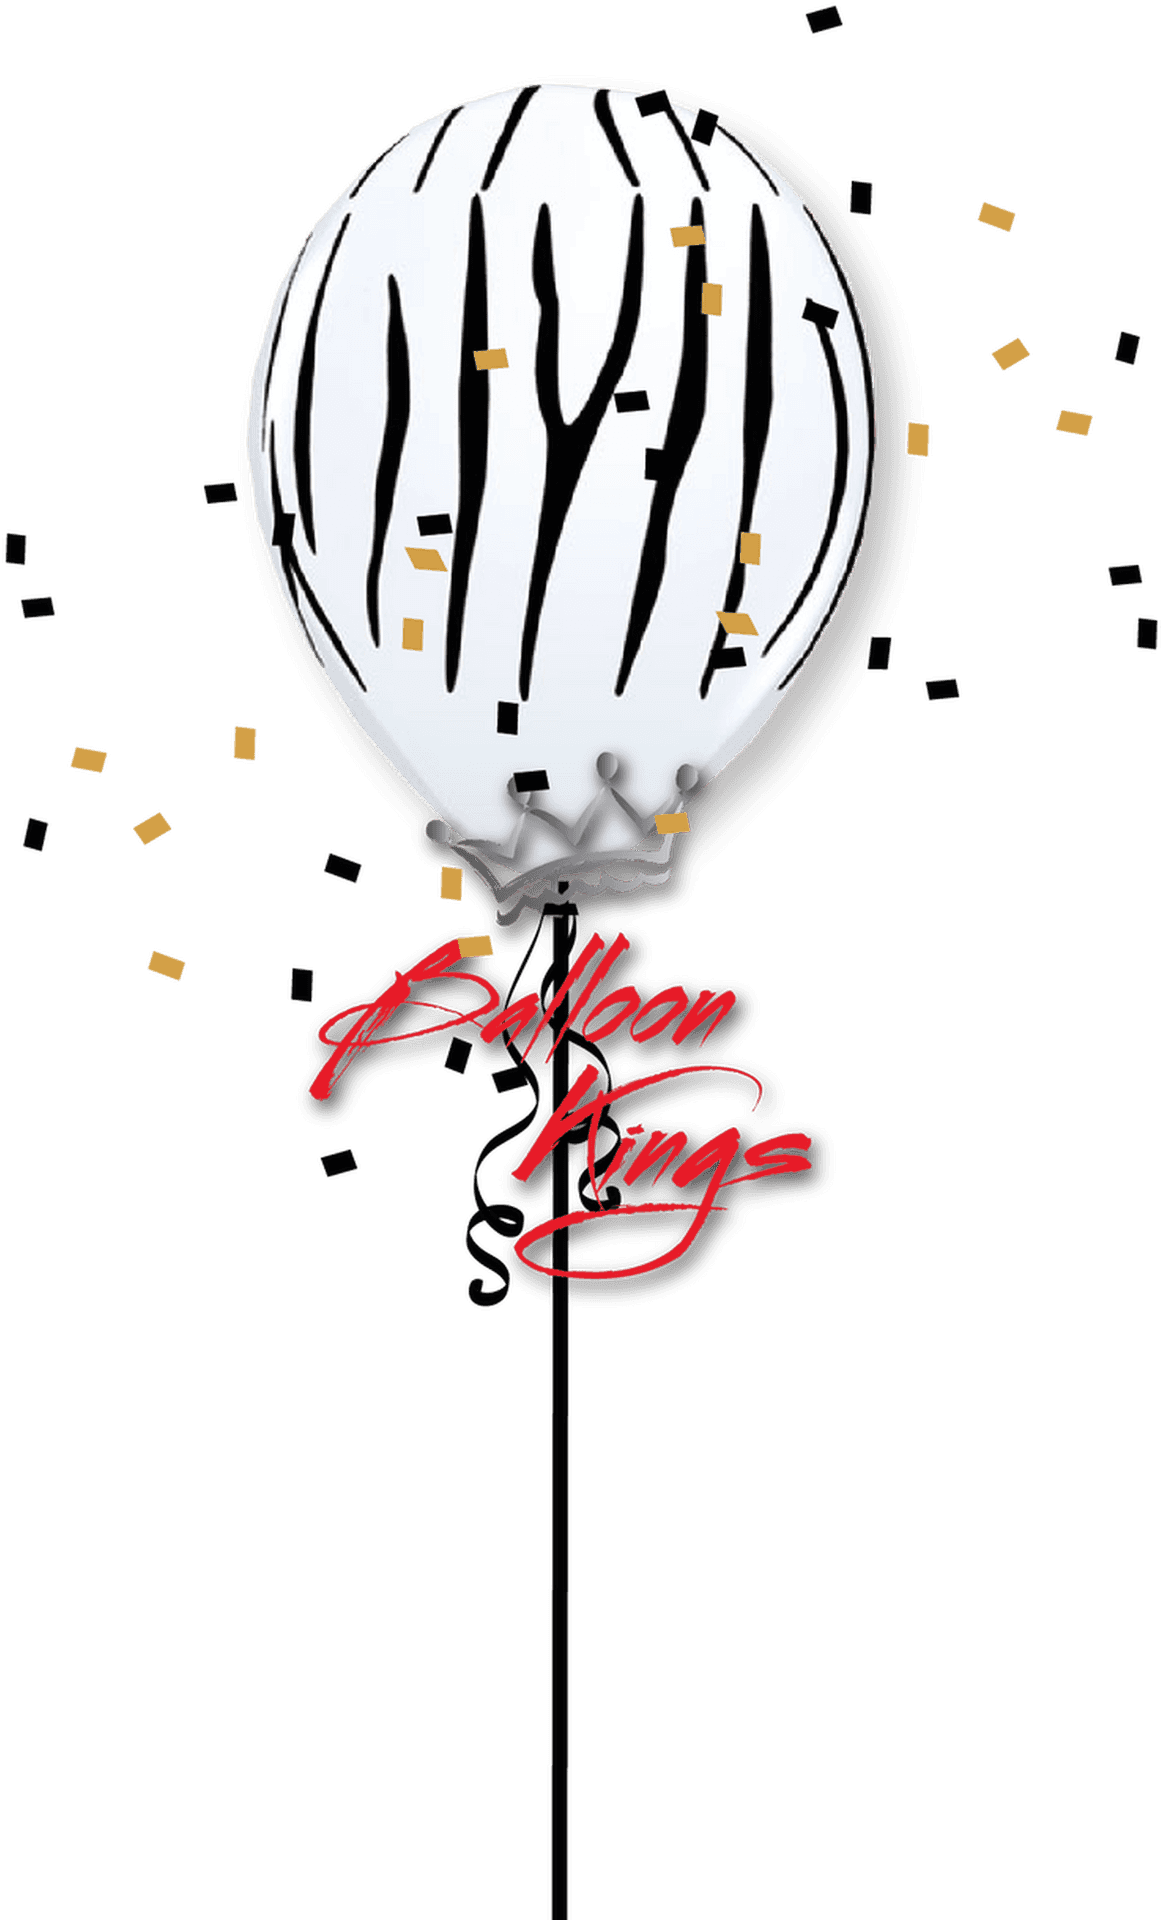 Zebra Striped Balloon King PNG